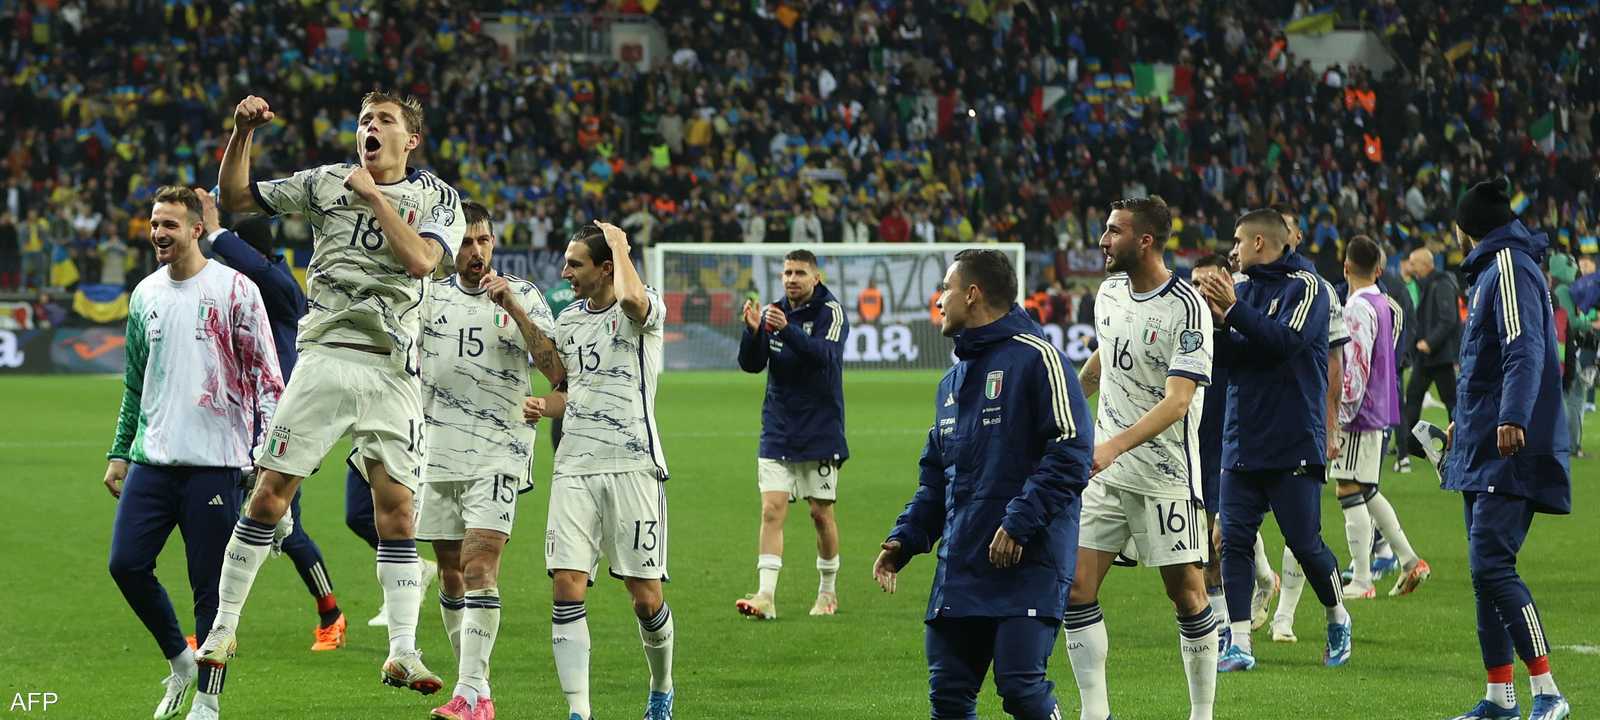 منتخب إيطاليا يحمل لقب آخر نسخة من كأس أوروبا